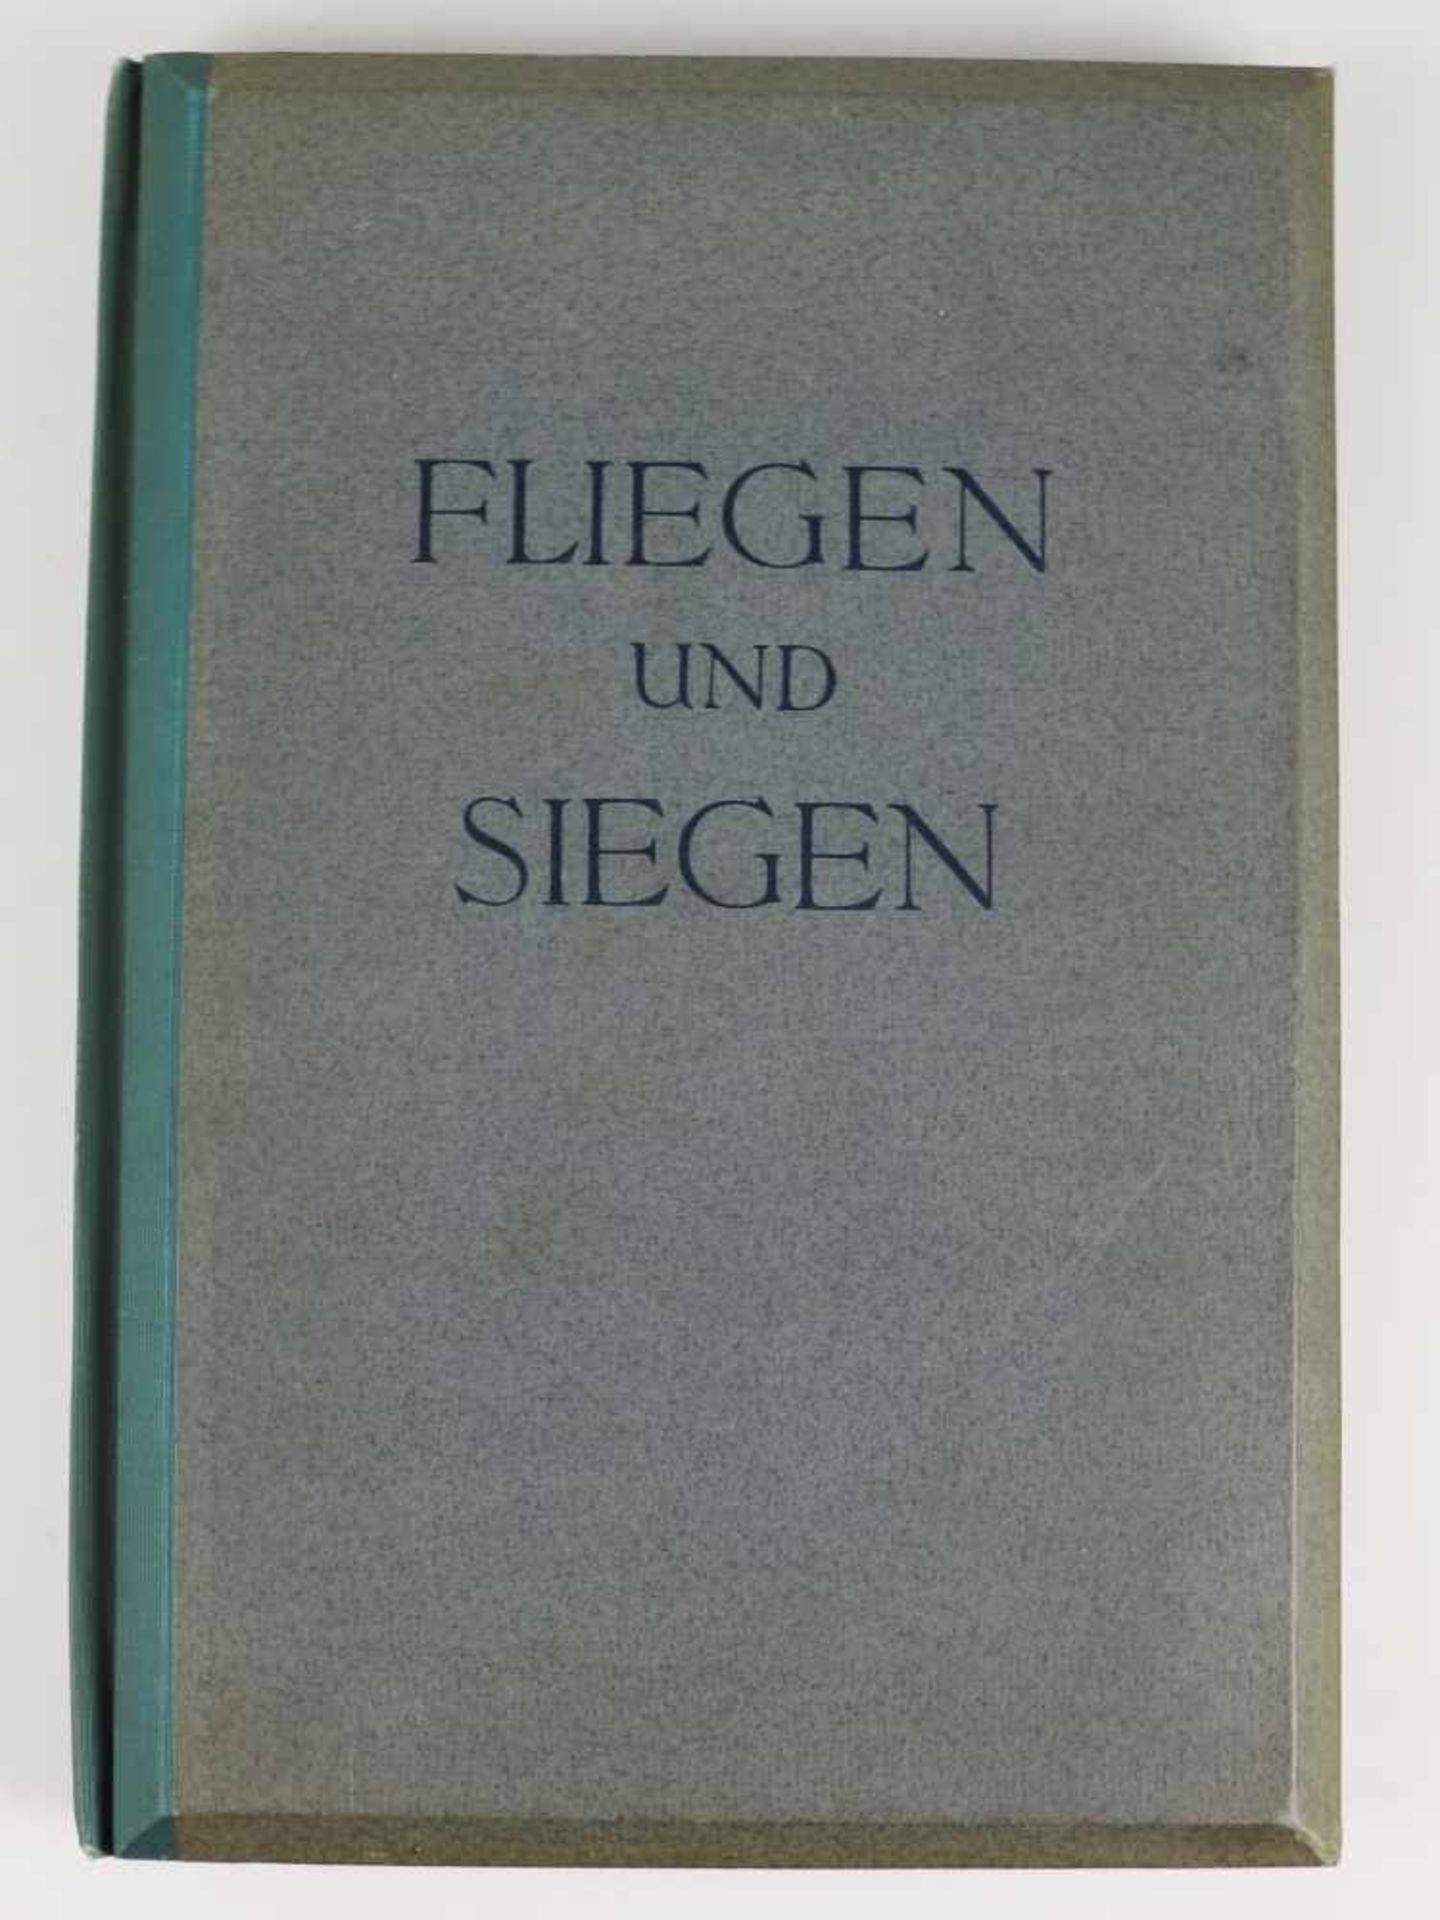 Raumbilderalbum - 3.ReichDr. Orlovius, Heinz, "Fliegen und Siegen, ein Raumbildwerk von unserer